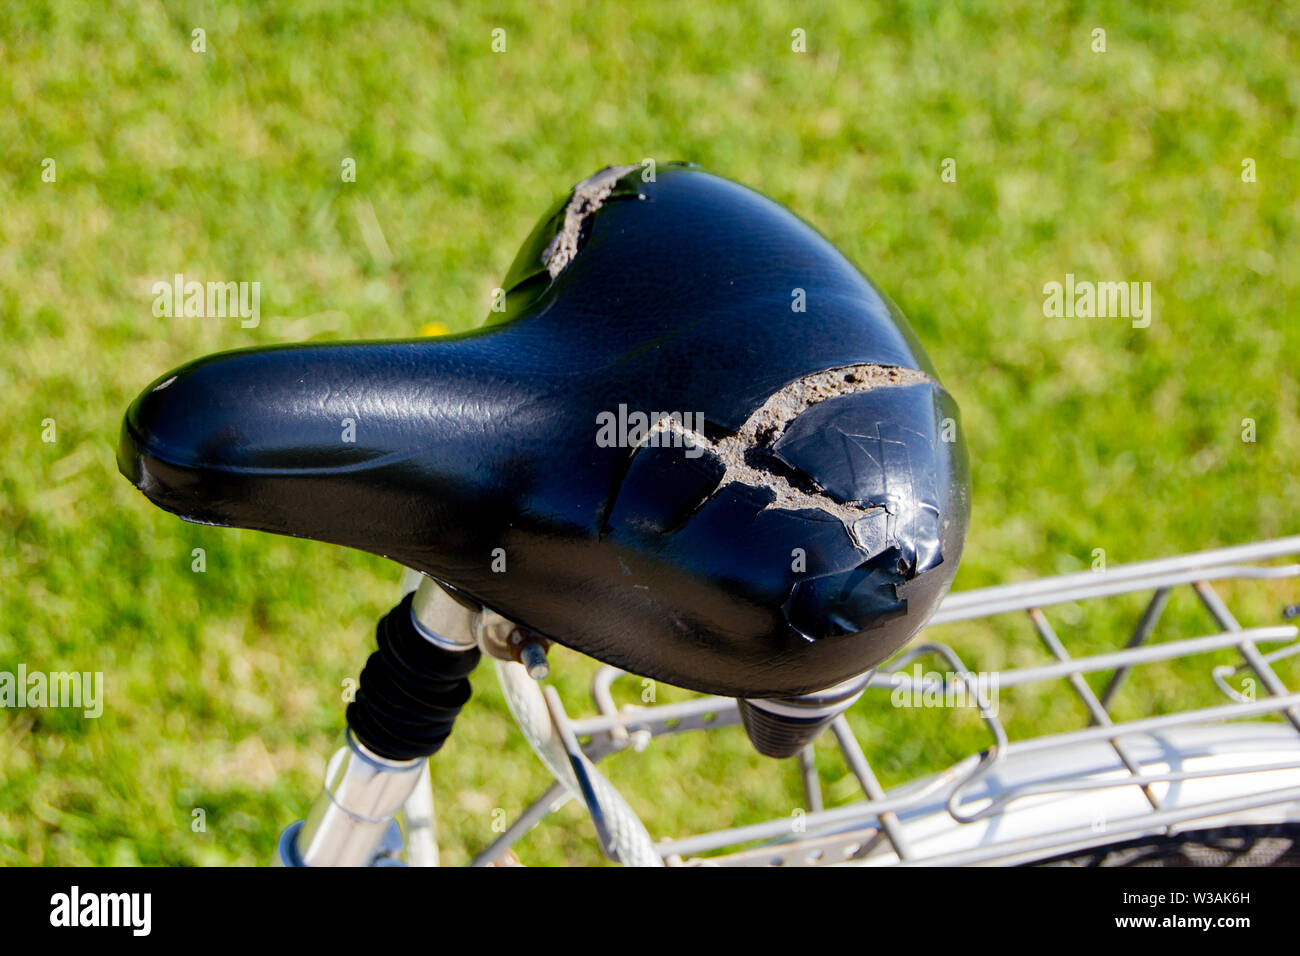 Defekte und beschädigte Fahrrad Sattel durch Wärme und Nutzung. Schaum außerhalb und nicht mehr verwendbar. Stockfoto